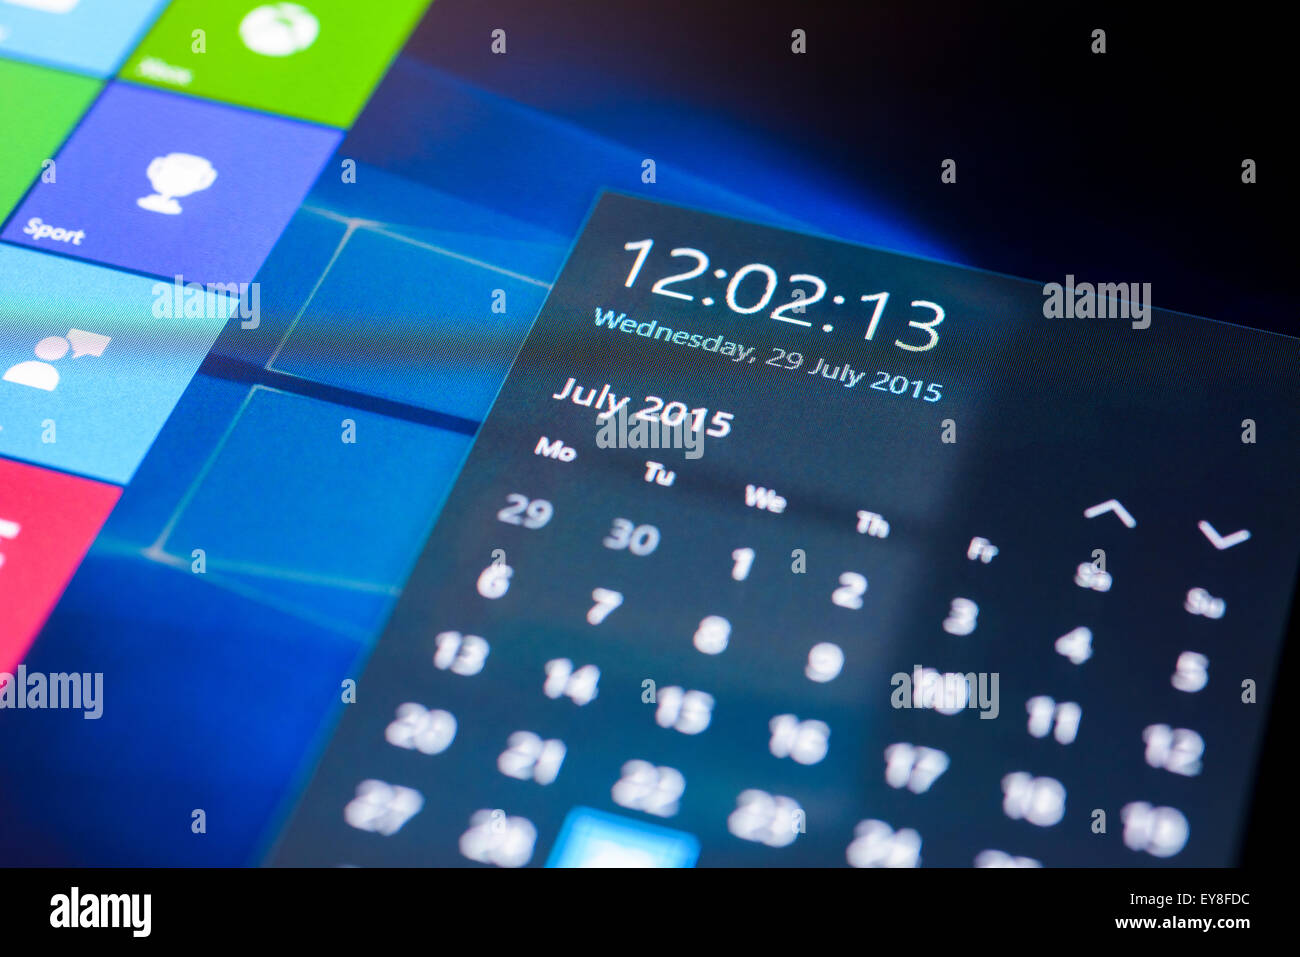 Système d'exploitation Microsoft Windows 10 sur un écran tactile Tablet en mode tablette montrant la date de lancement 29 juillet 2015. Banque D'Images